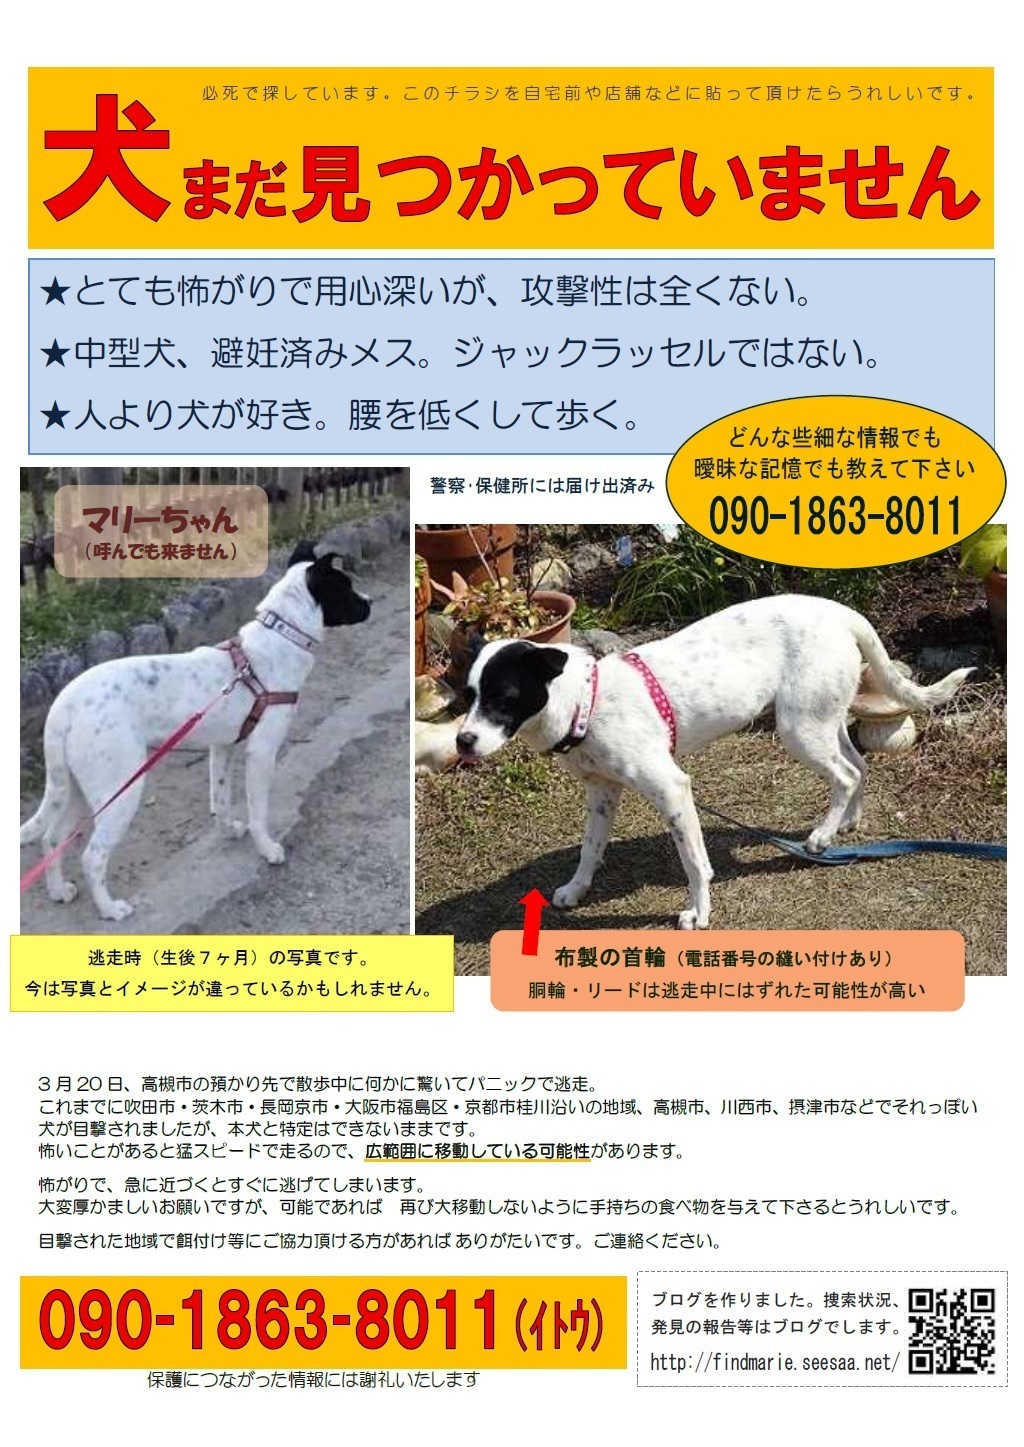 迷子の犬を探しています Top固定 迷子犬 マリーを探しています 大阪 京都